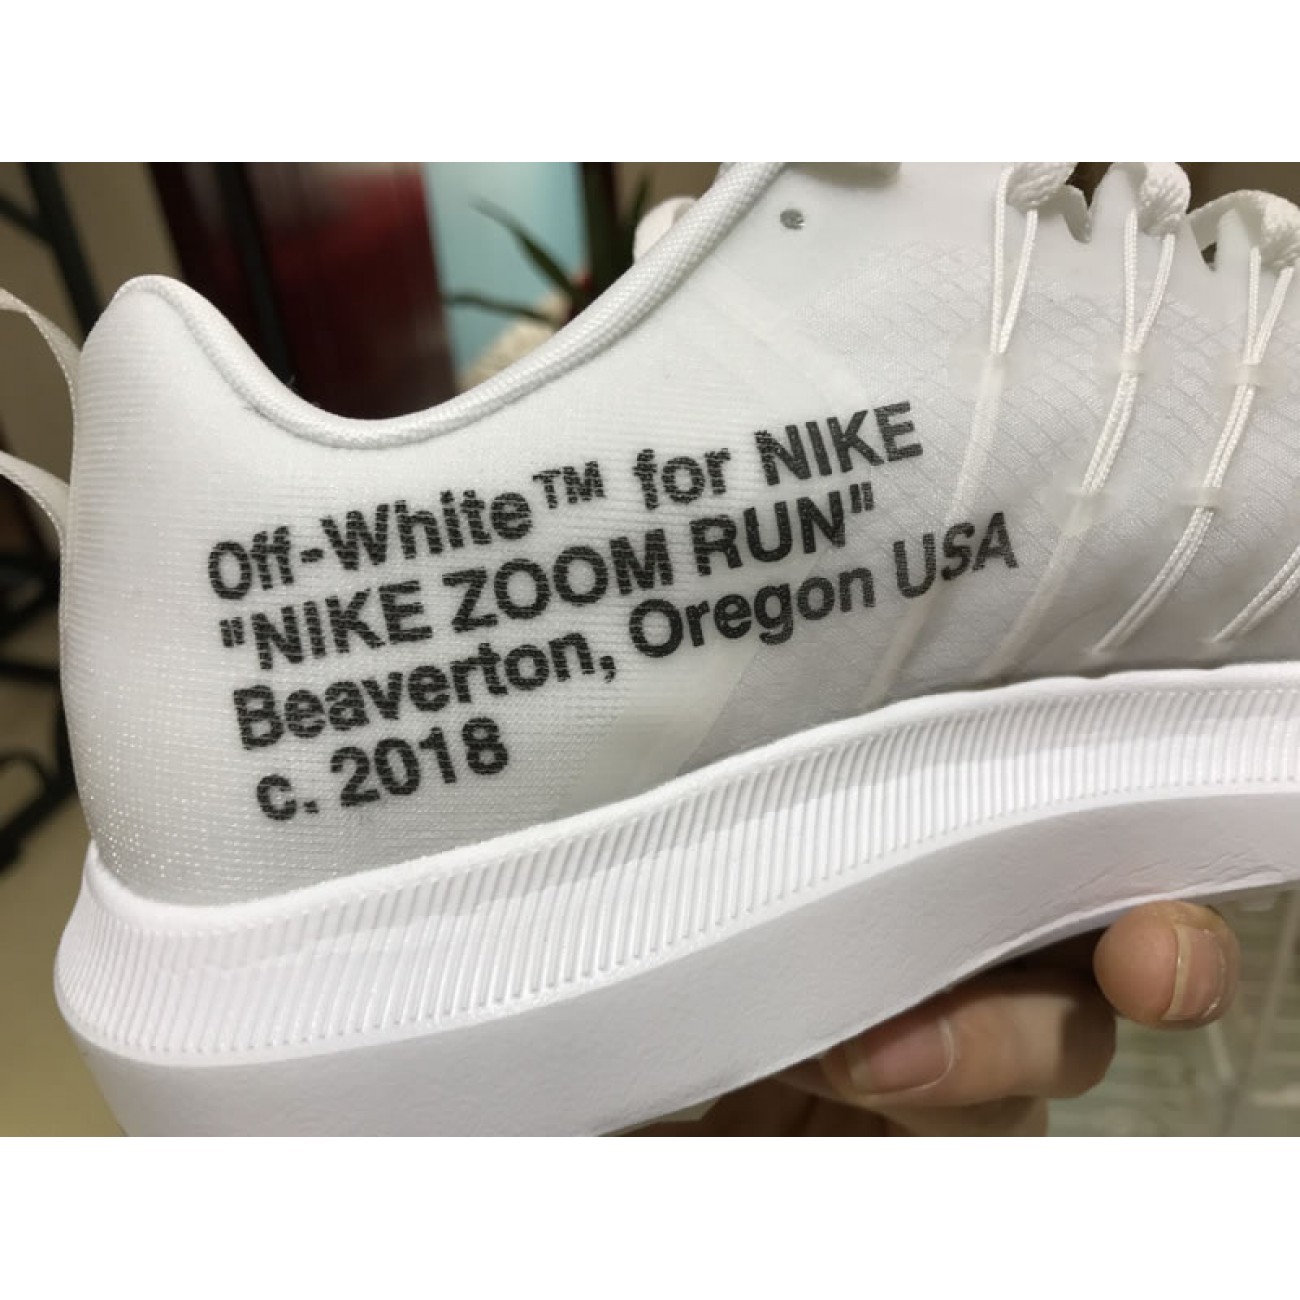 Off-White x Nike ZoomFly SP 4% OW White 808989-200